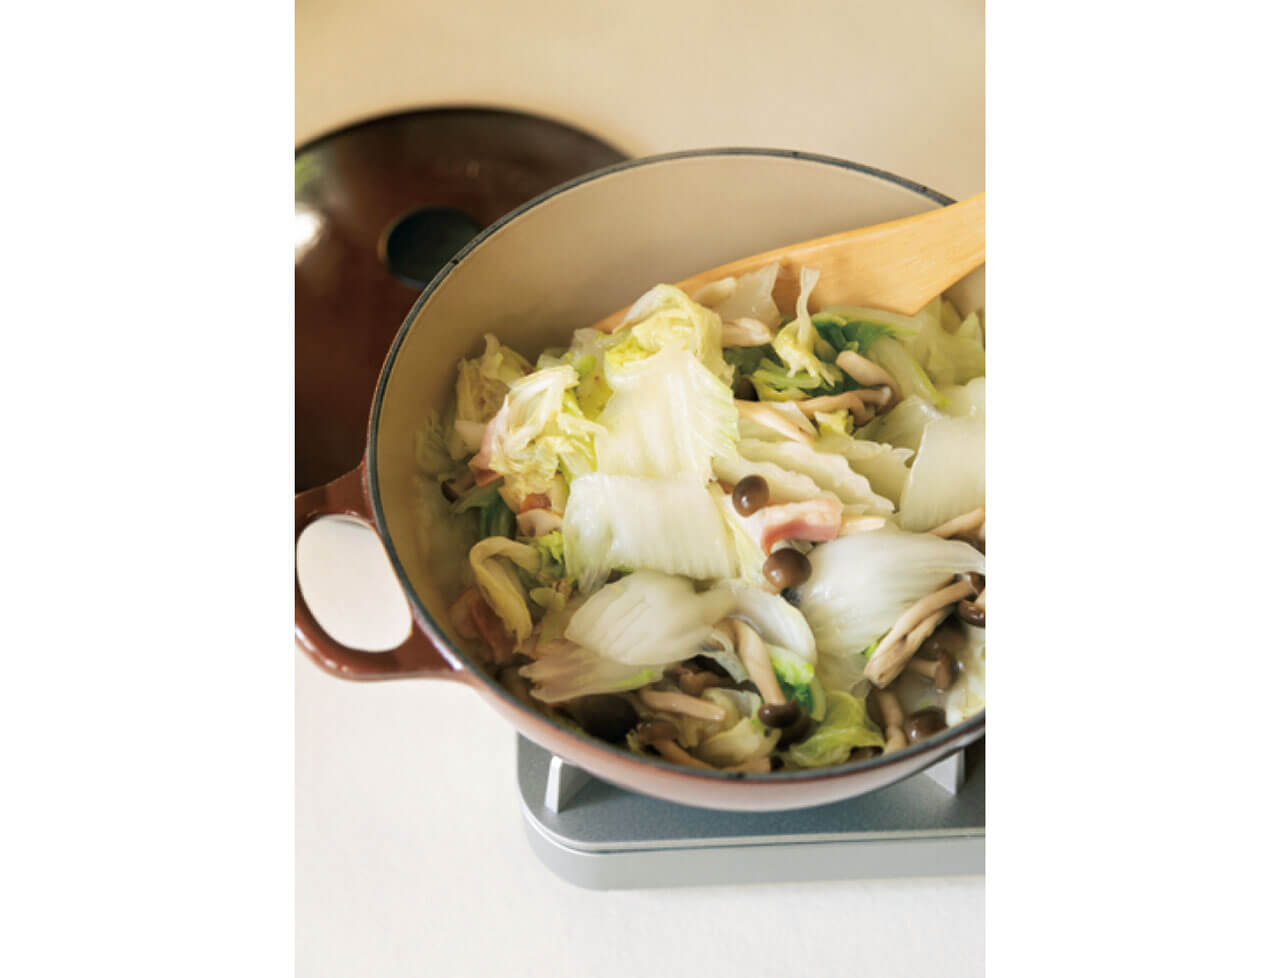 最初にオリーブオイルで白菜を蒸し炒めにすると、甘味やうま味が引き出される。その後に鍋に水分を加えるのがコツ